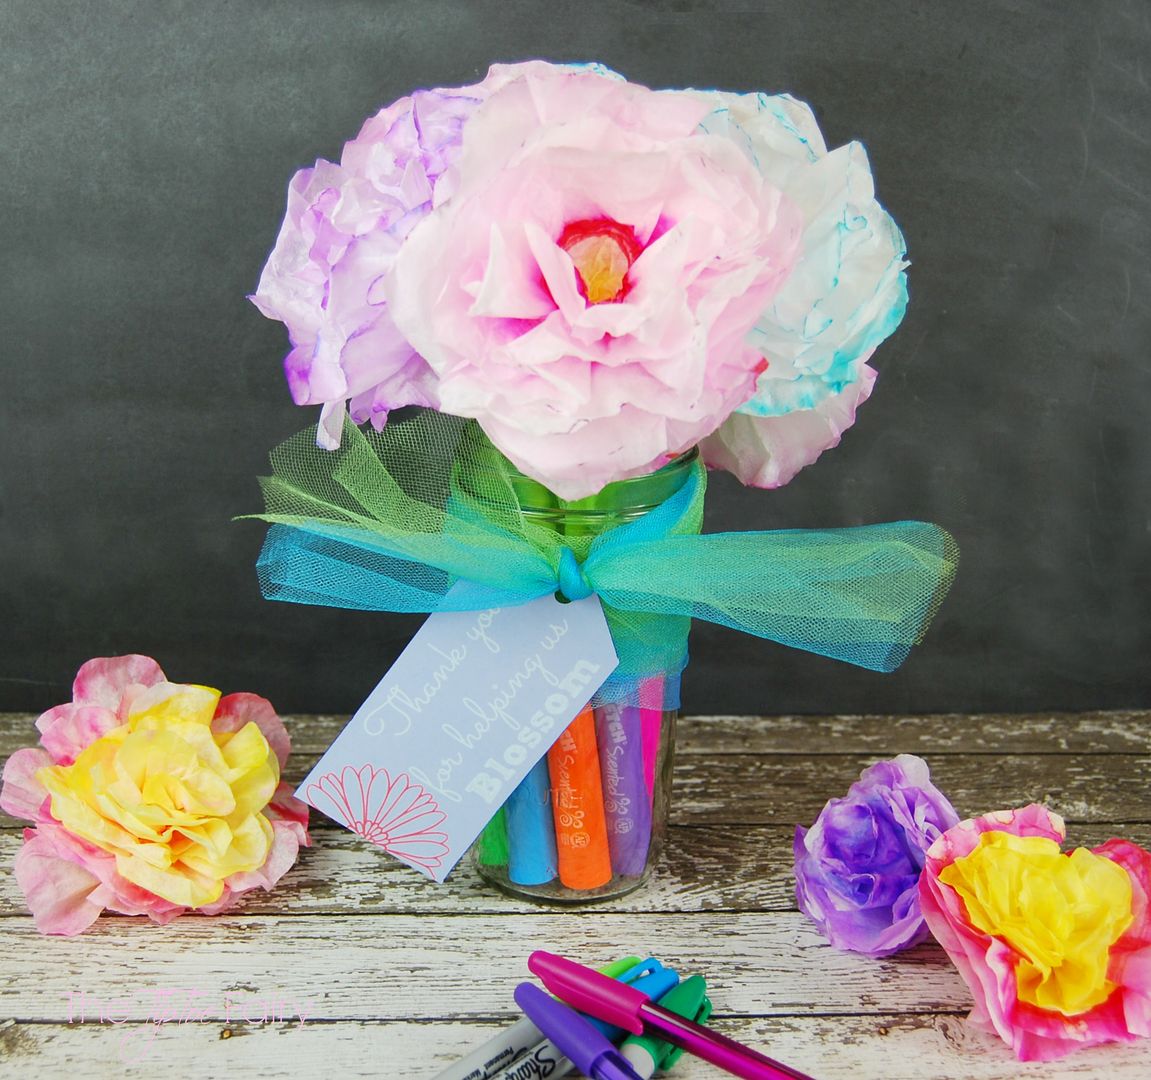 Coffee Filter Flower Pen Bouquet | The TipToe Fairy #InspireStudents #TeachersChangeLives #pmedia #ad #tutorial #teachergifts #crafts